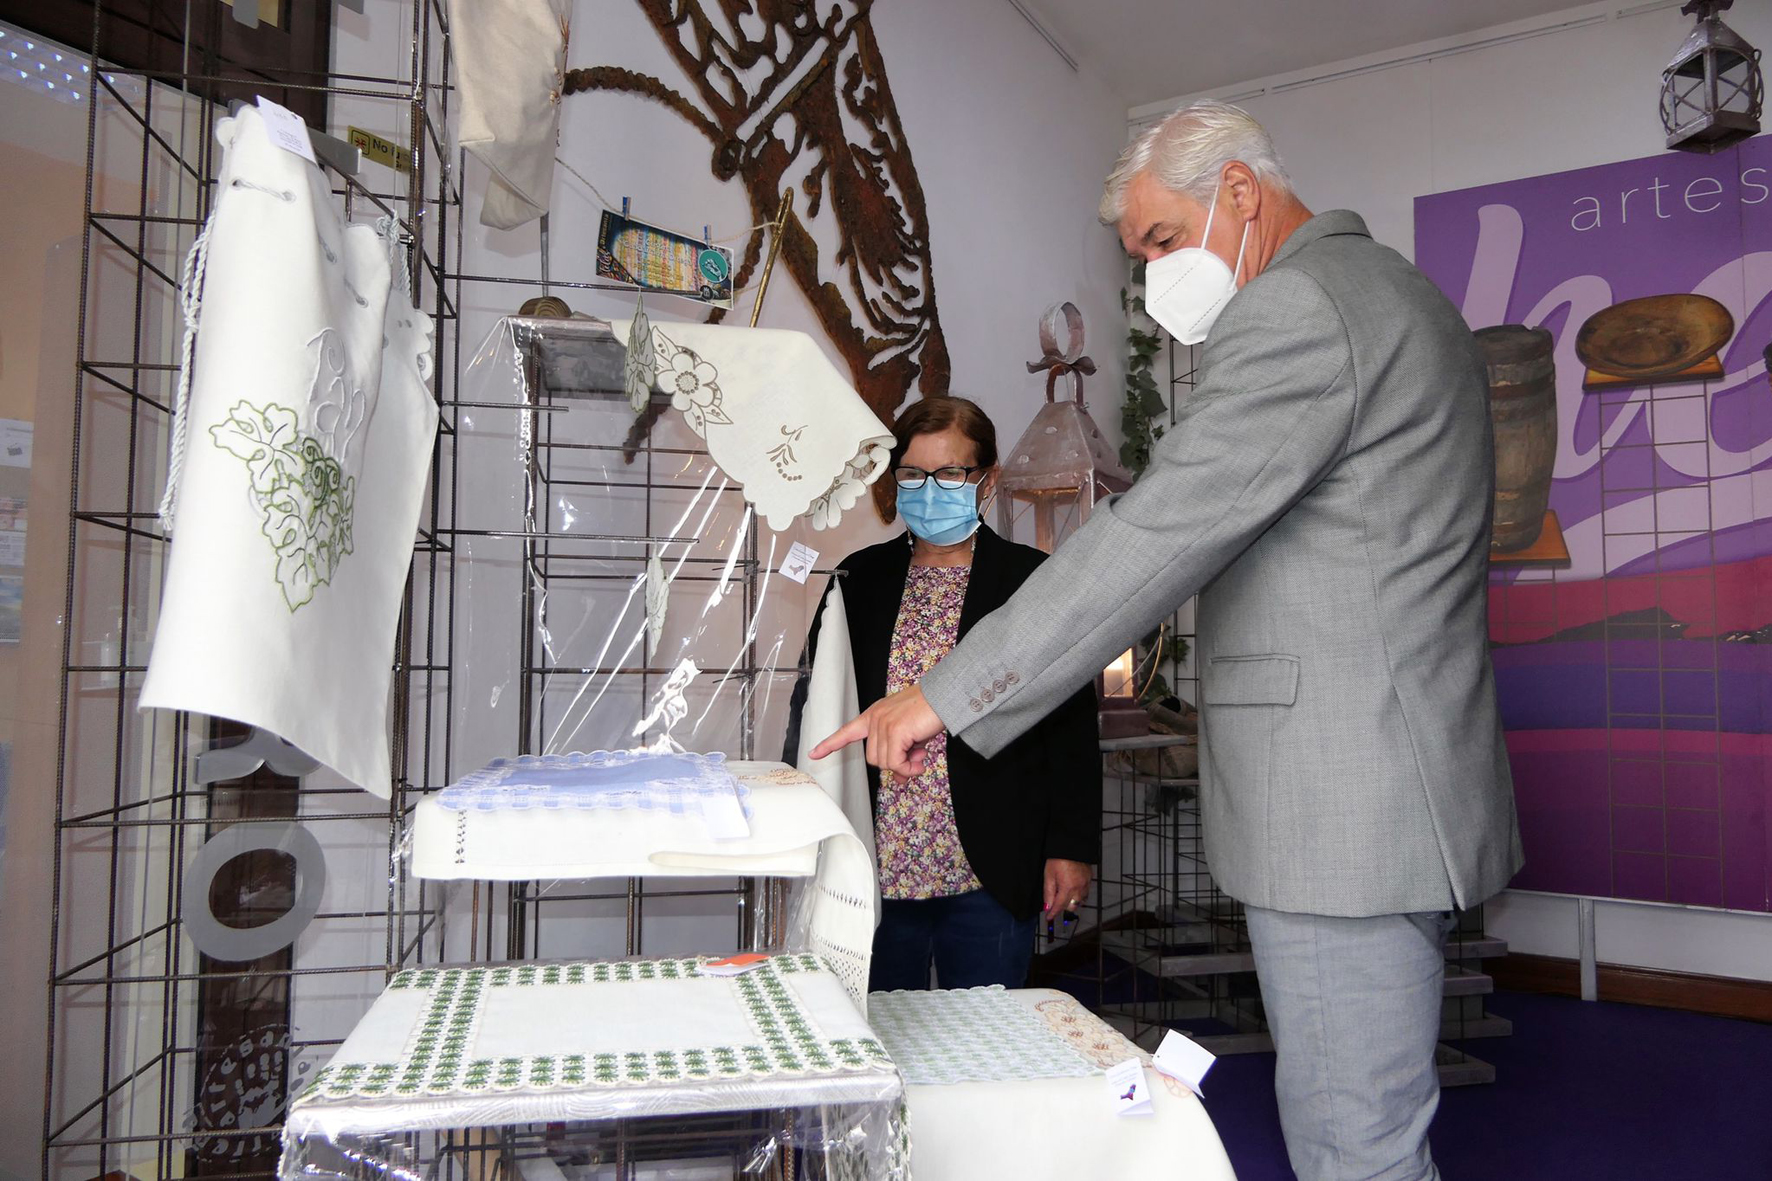 El Cabildo inaugura la muestra “Telas y Artesanía Herreña” que recoge el trabajo de artesanos herreños